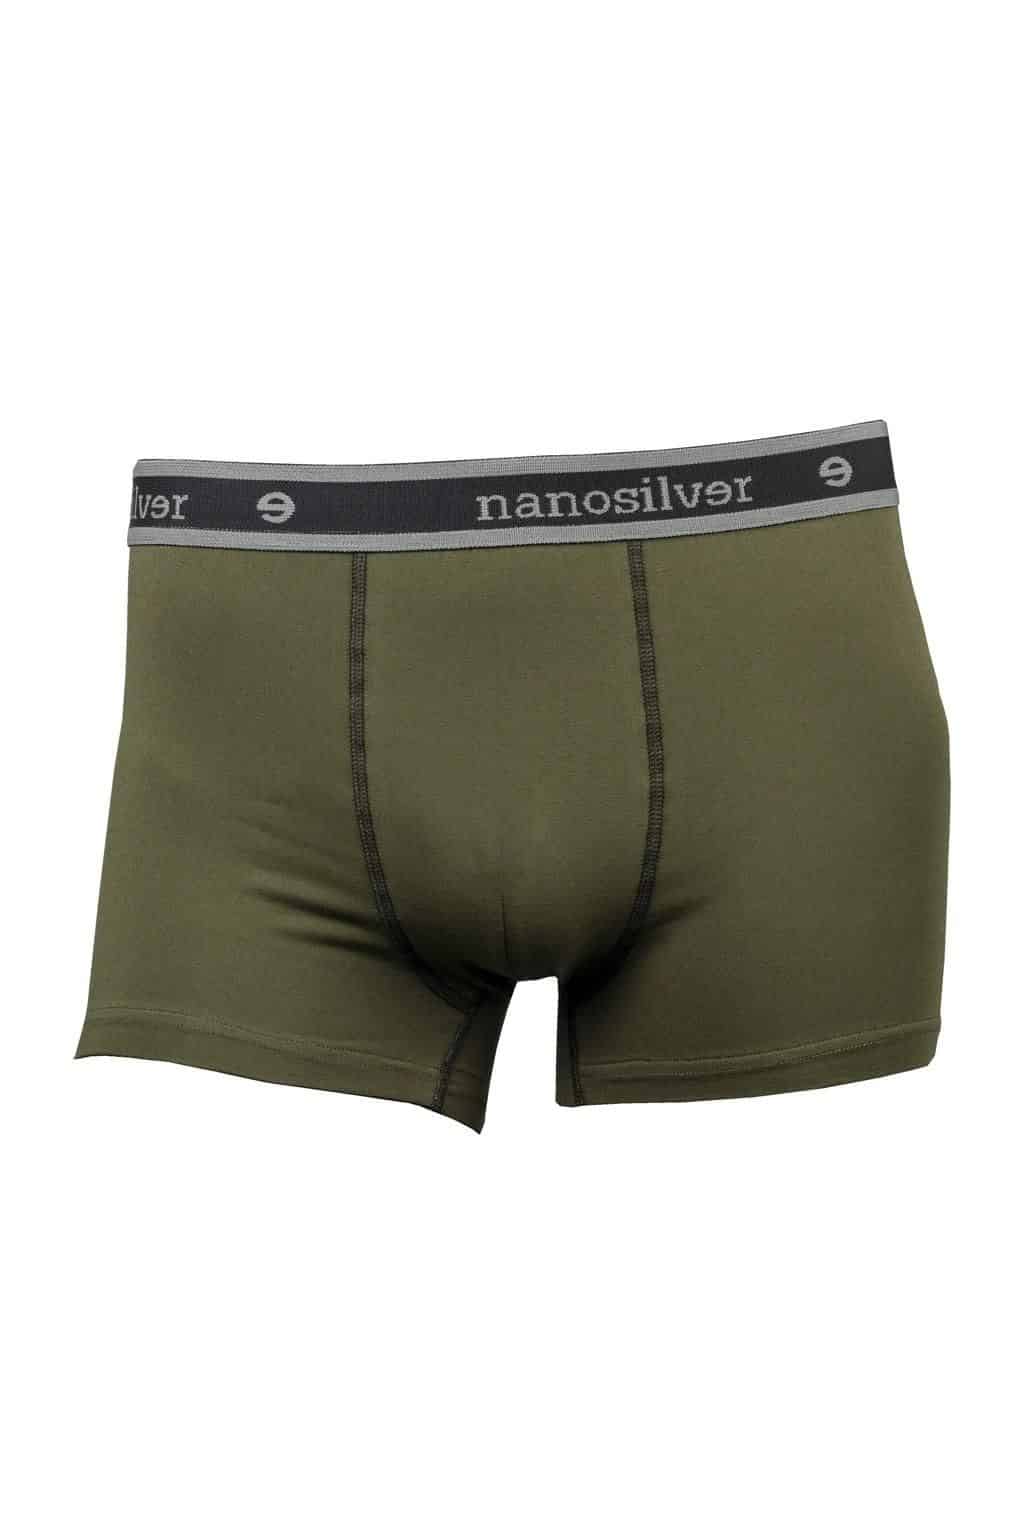 Levně nanosilver® Nano boxerky s gumou nanosilver bez zadního švu – olivové Velikost: XXL